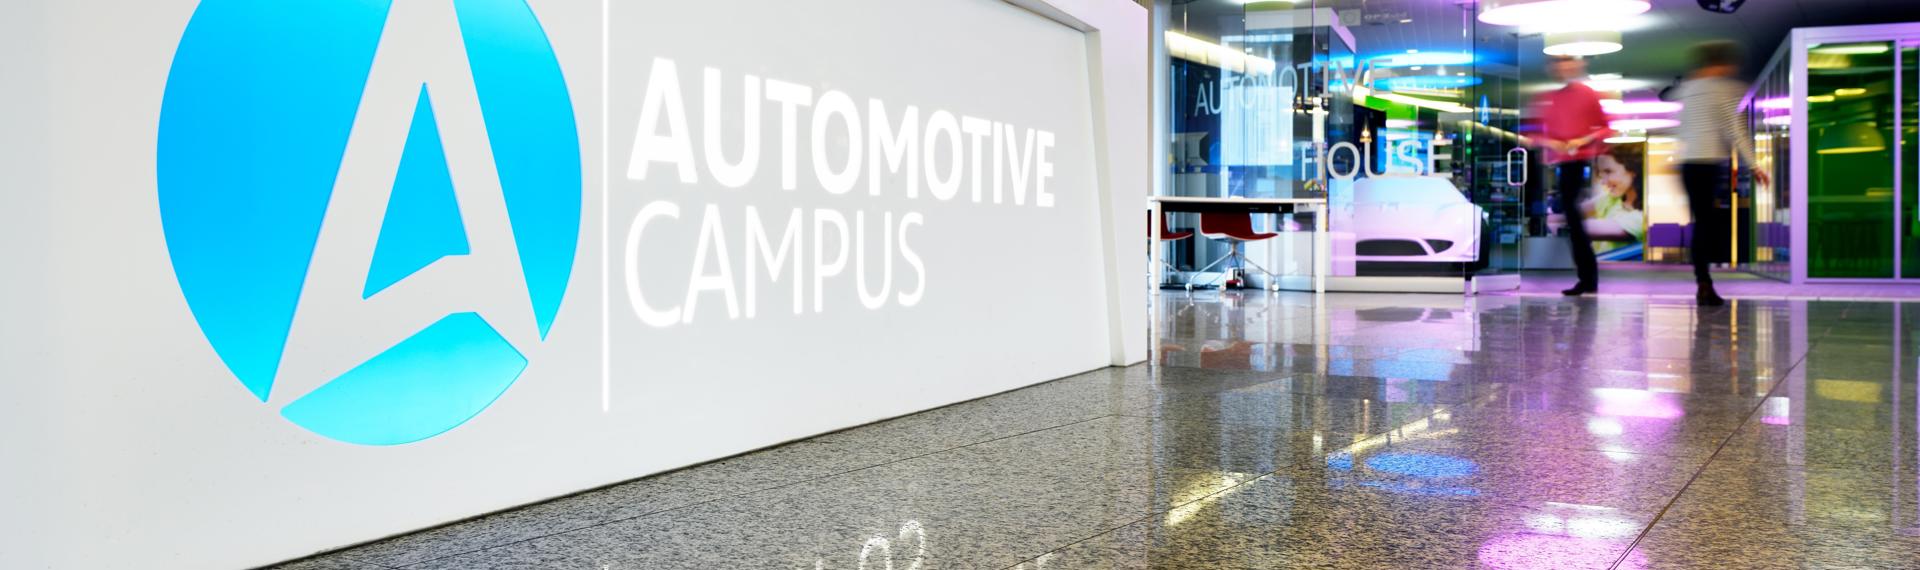 De Automotive Campus in Helmond is een broedplaats voor innovaties op mobiliteitsgebied